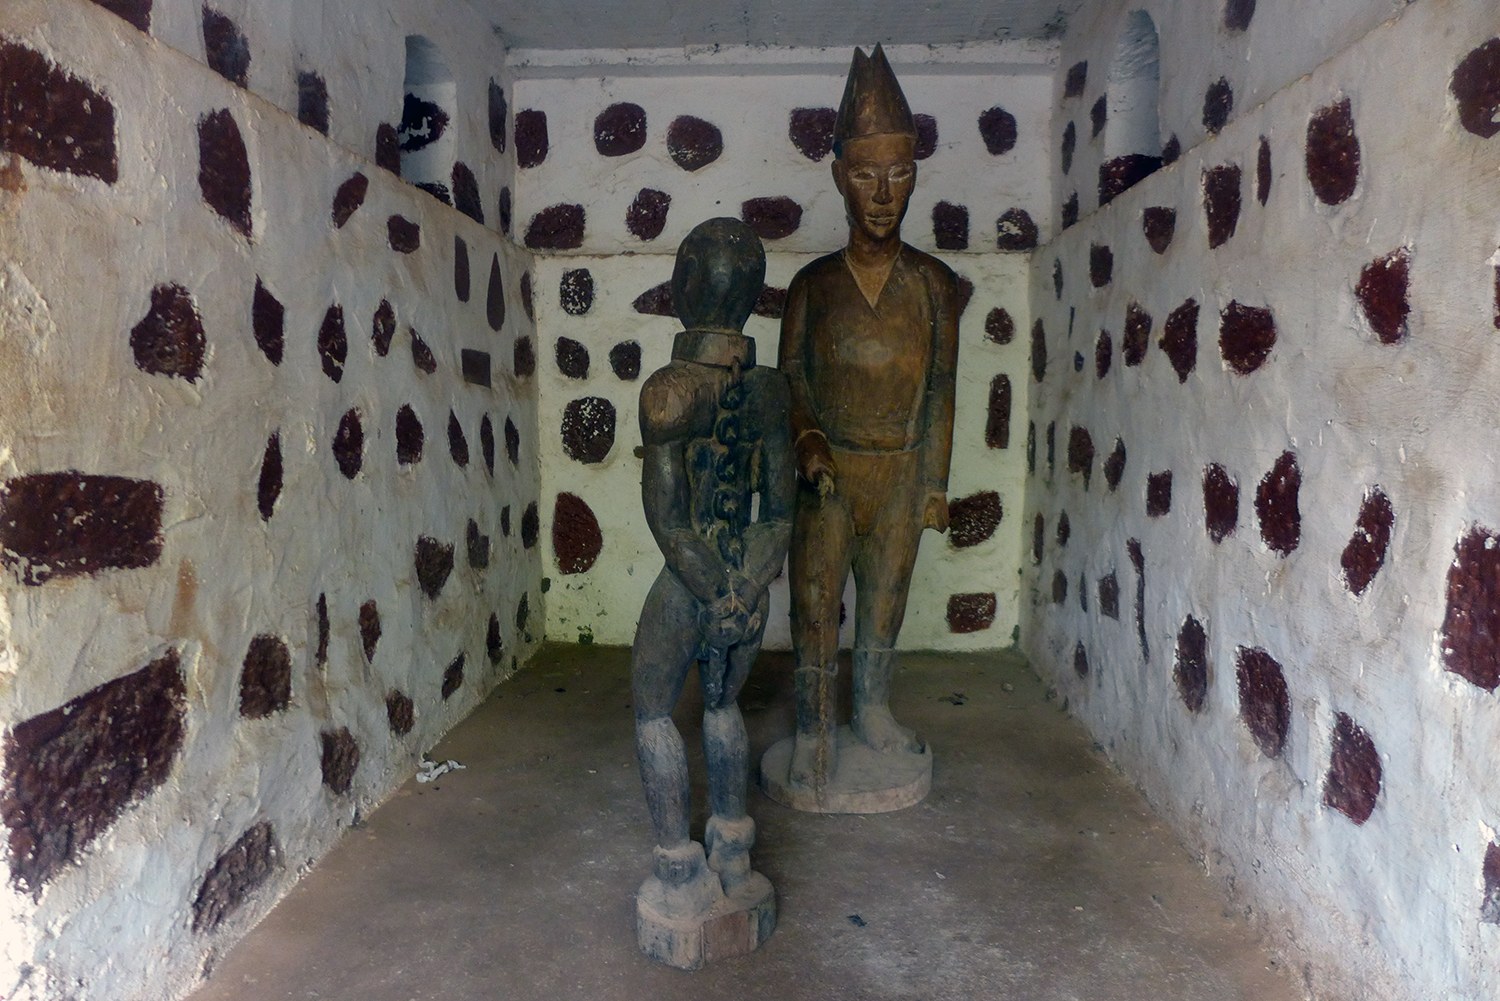 Statues d’un négrier et son esclave dans la cave où étaient cachés les esclaves avant leur départ pour l’Amérique après l’abolition de la traite négrière.